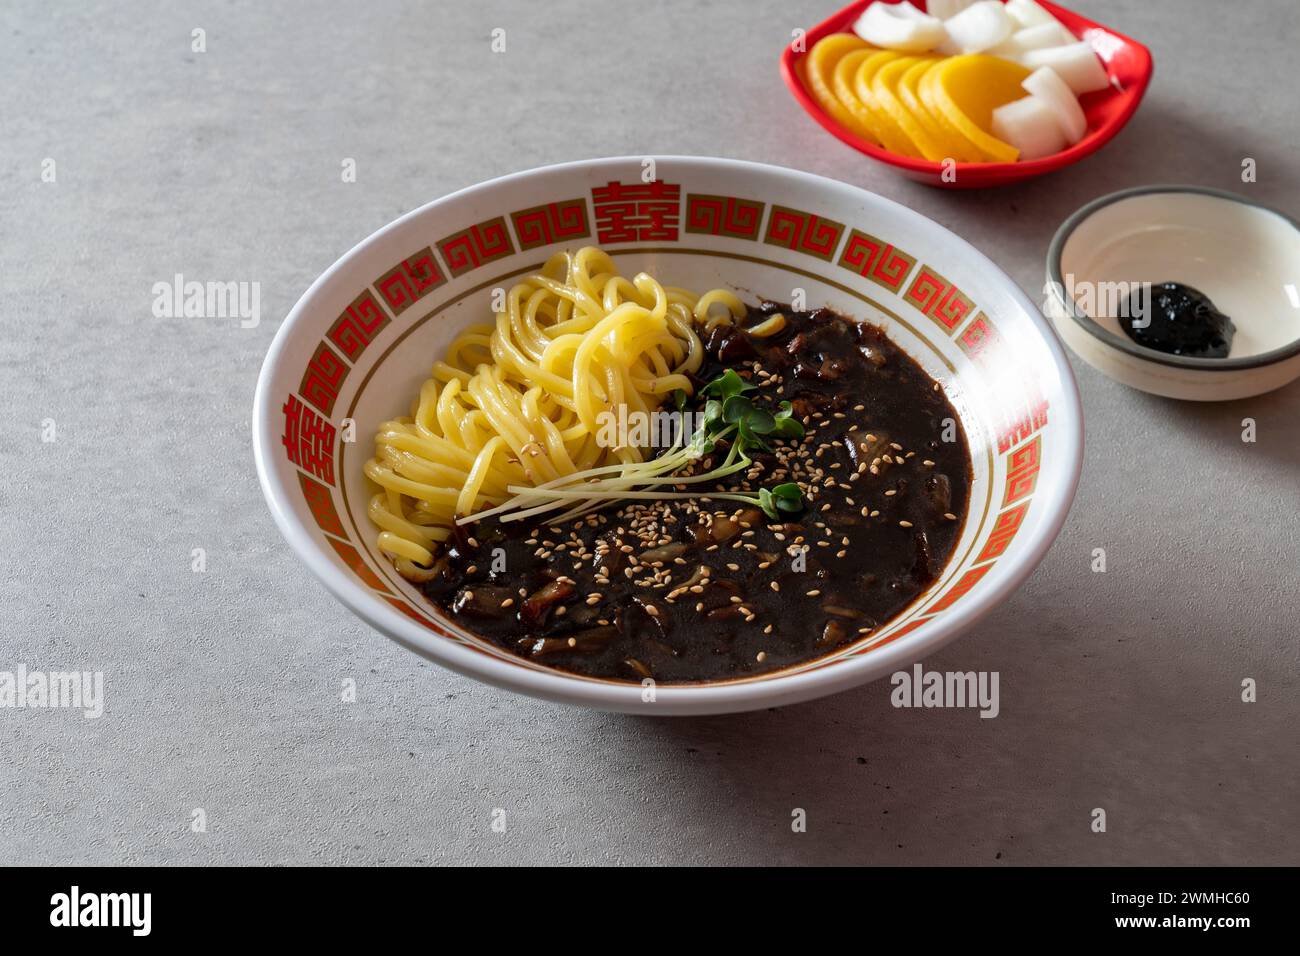 Porc aigre-doux nouilles à la sauce aux haricots noirs nouilles de style chinois, avec légumes et fruits de mer riz frit plat coréen Banque D'Images